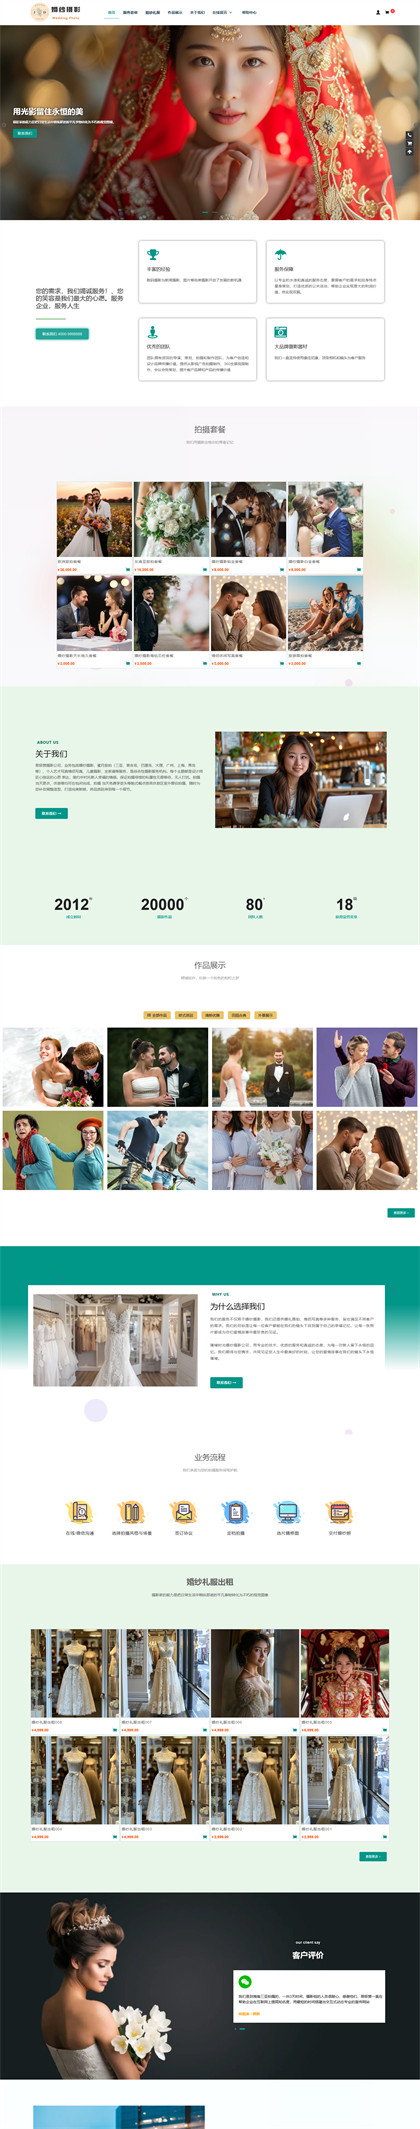 婚纱摄影公司-摄影工作室-婚庆公司-商城网站模板网站模板图片